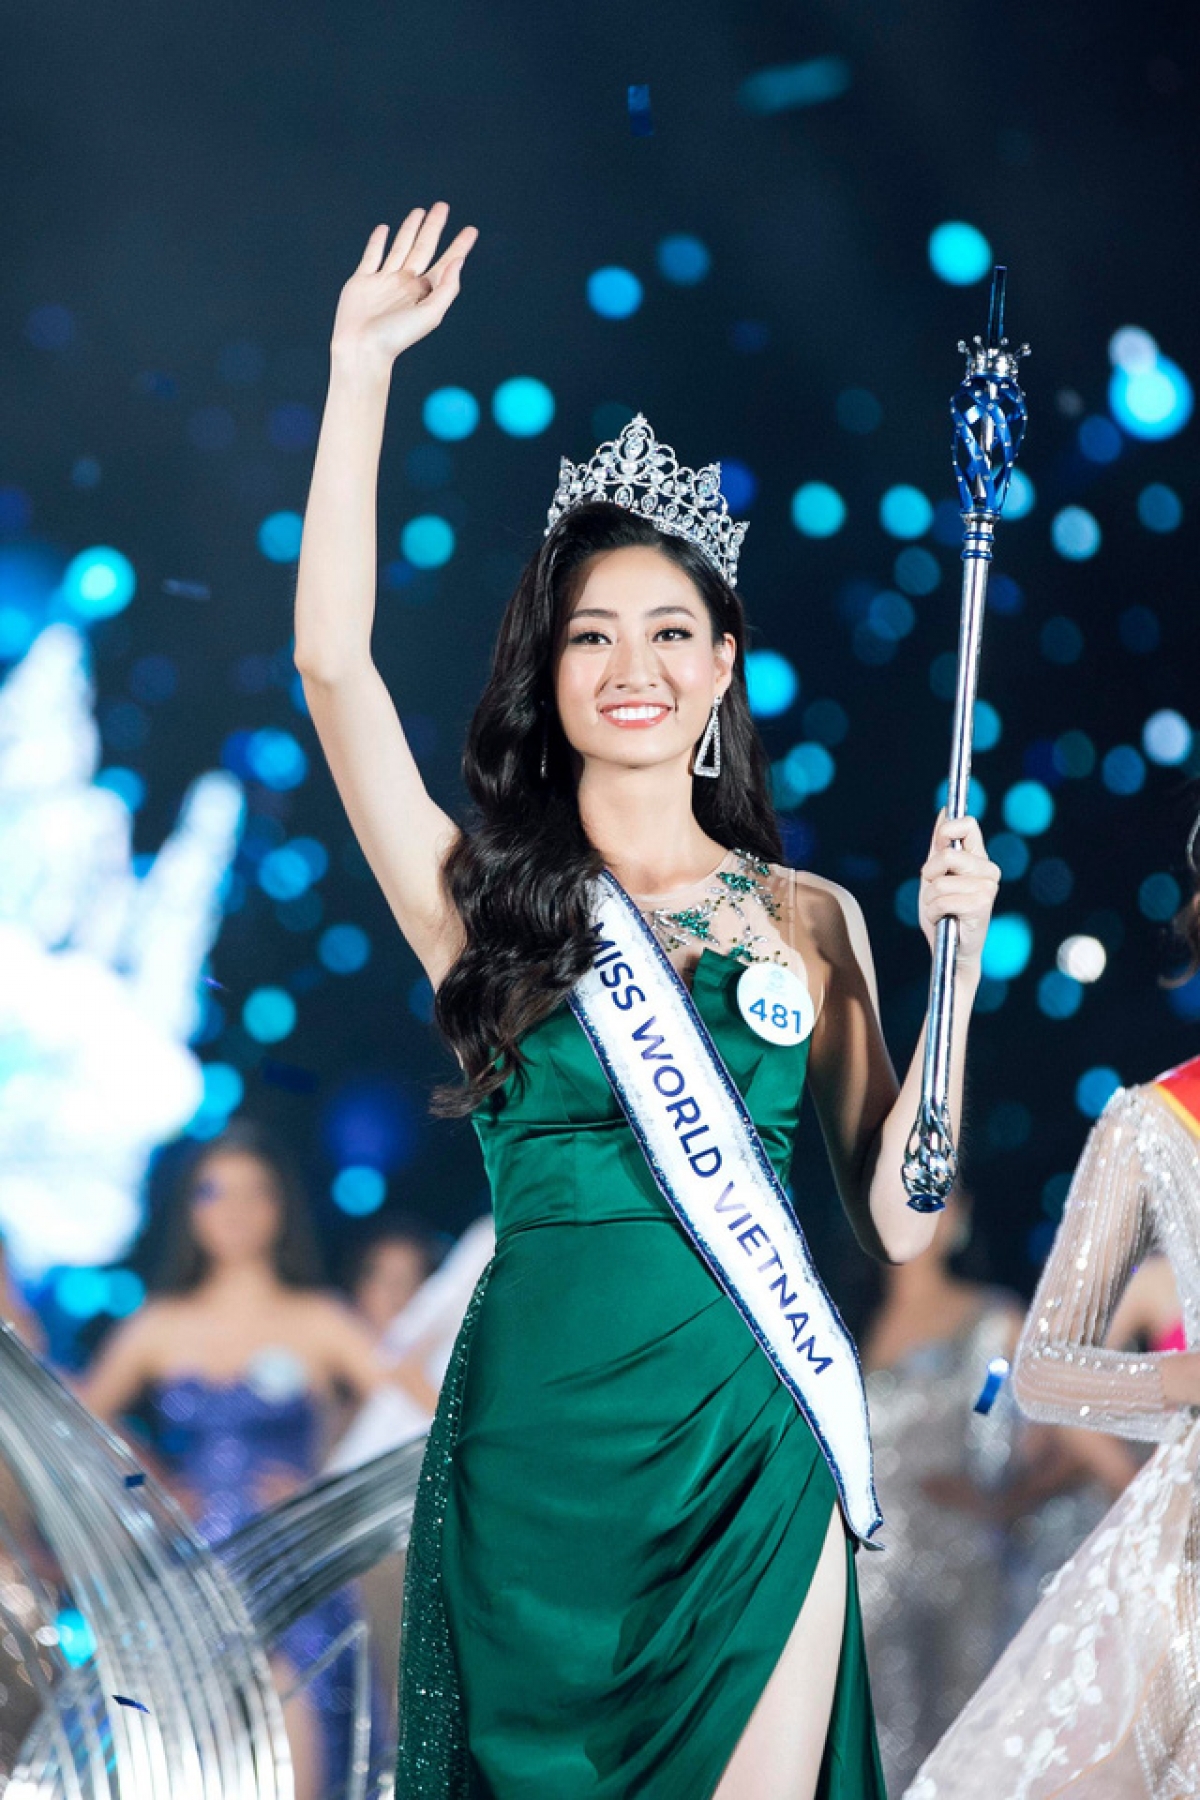 Lương Thùy Linh là đại diện Việt Nam đạt thành tích cao nhất từ trước đến nay tại Miss World khi lọt Top 12 mà không qua sự bình chọn của khán giả